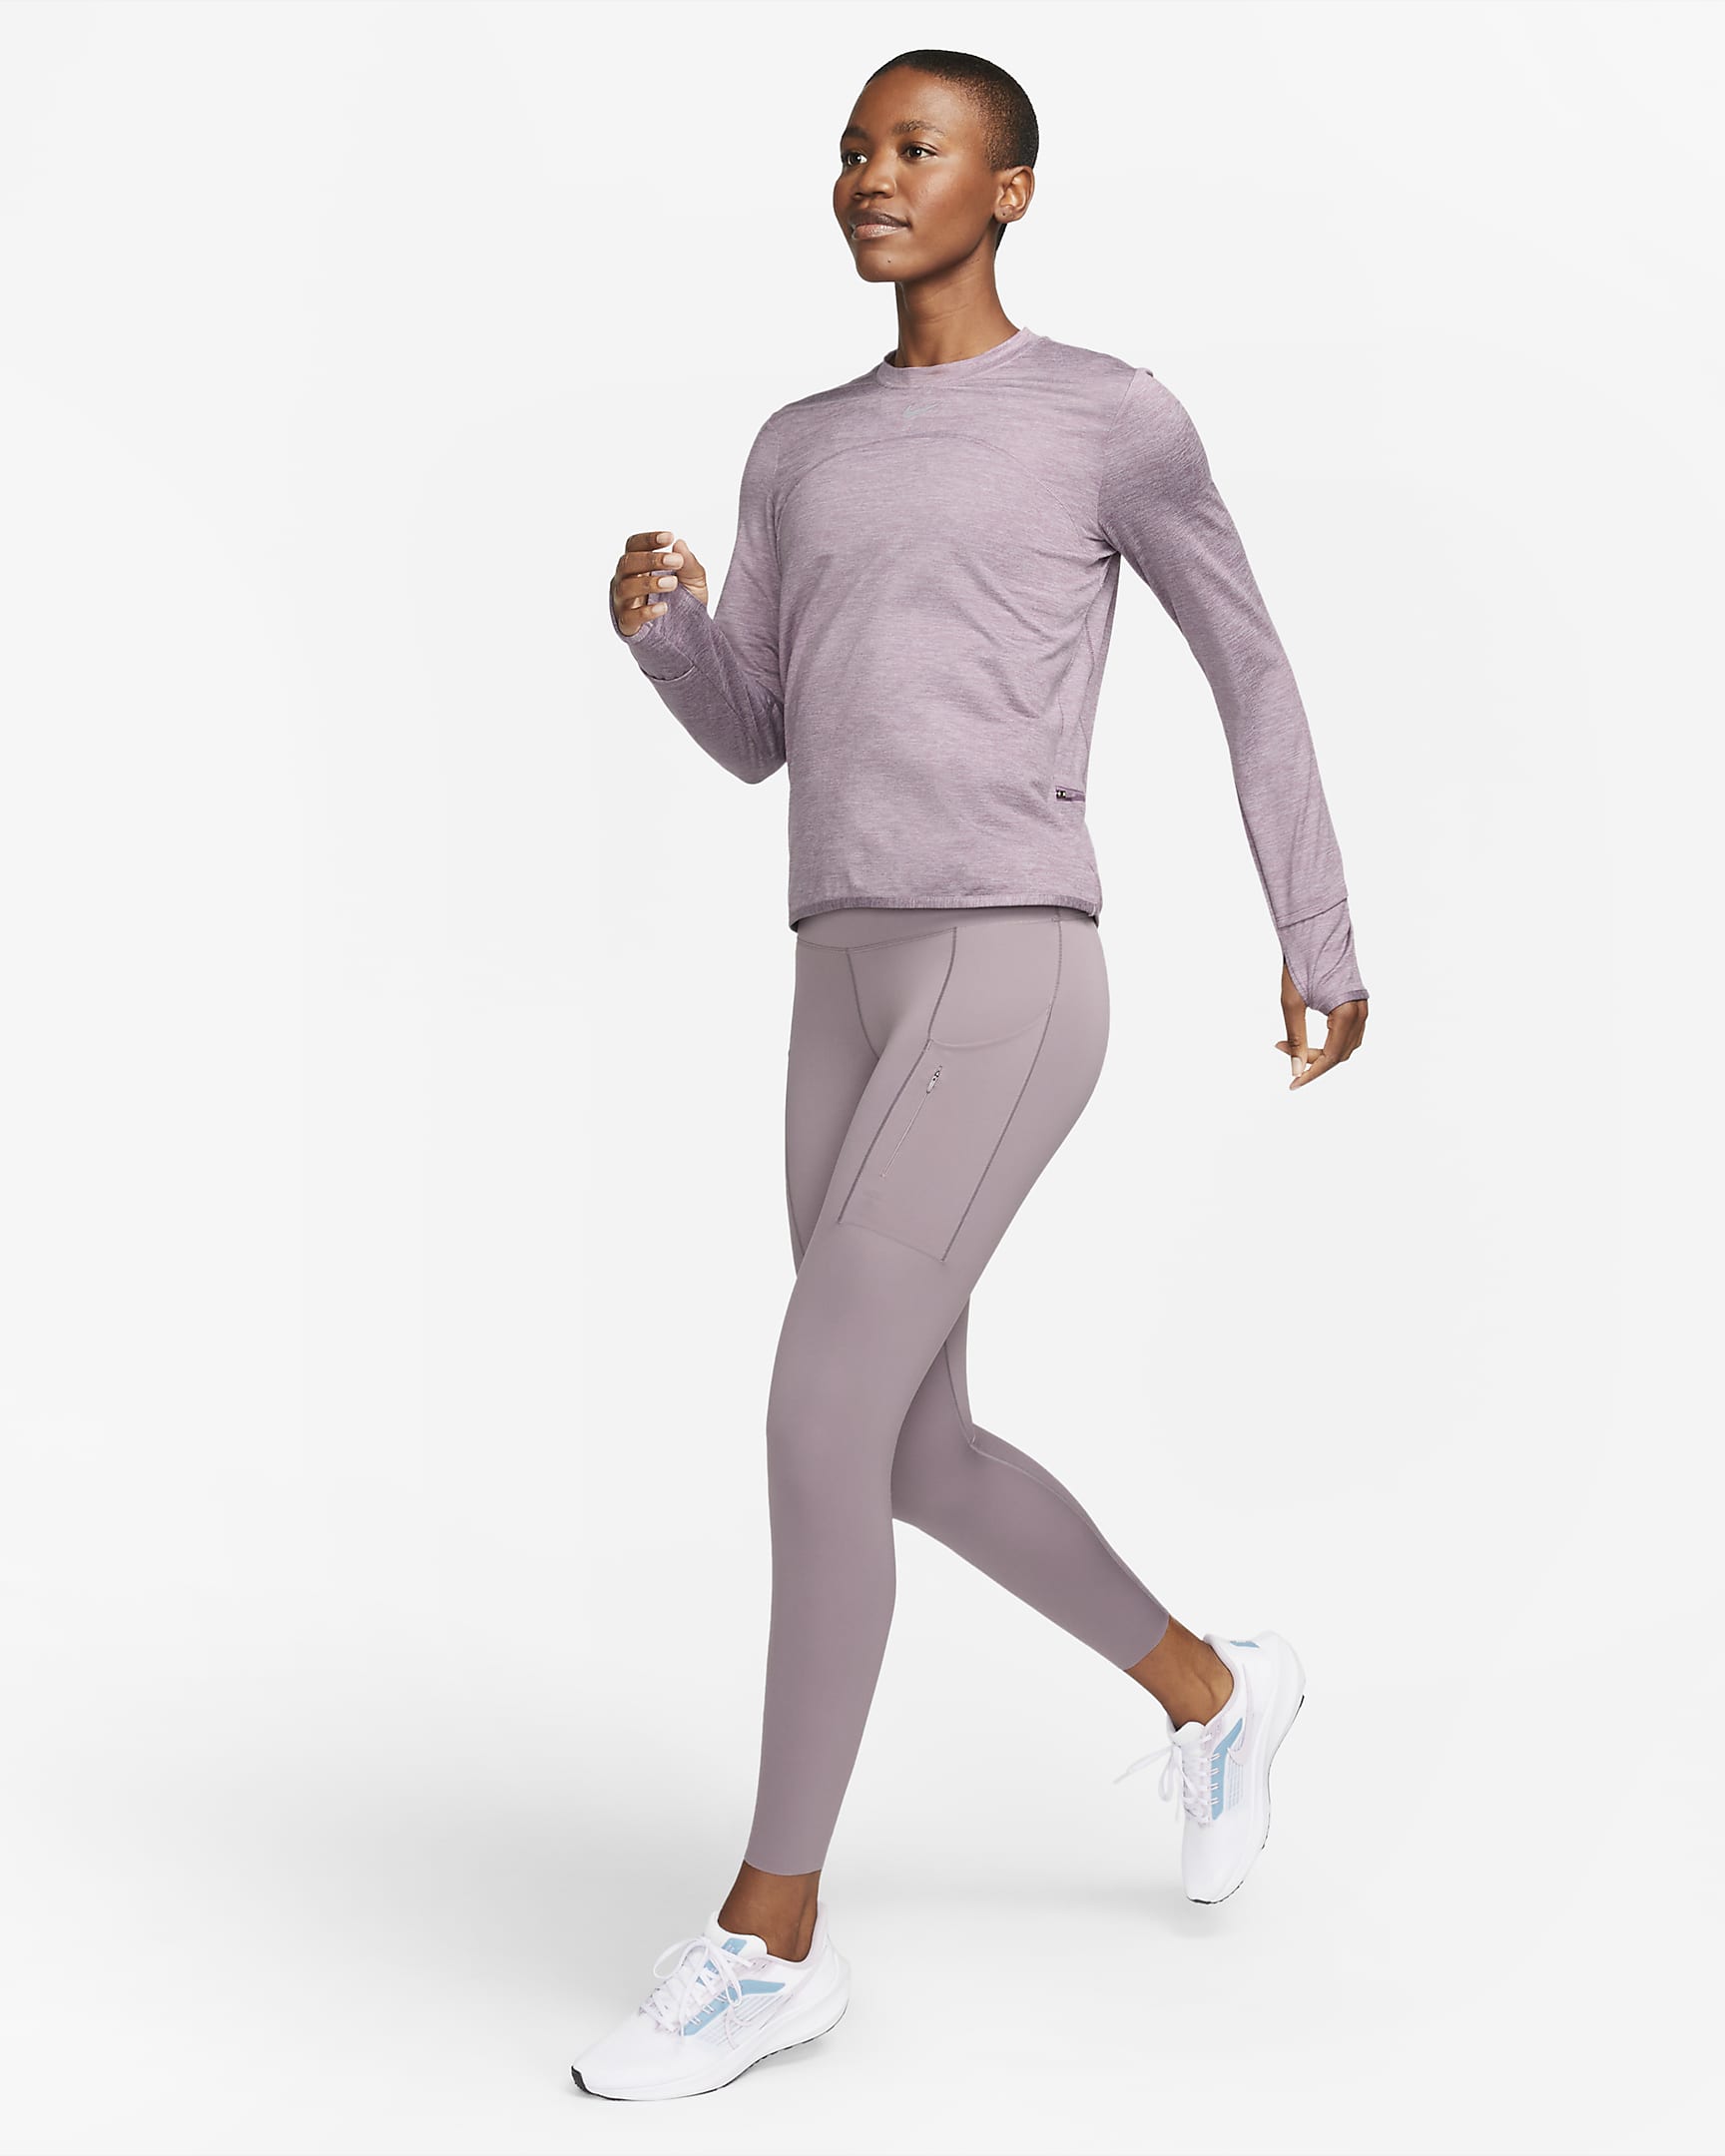 Women's Nike Dri-FIT Swift Element UV